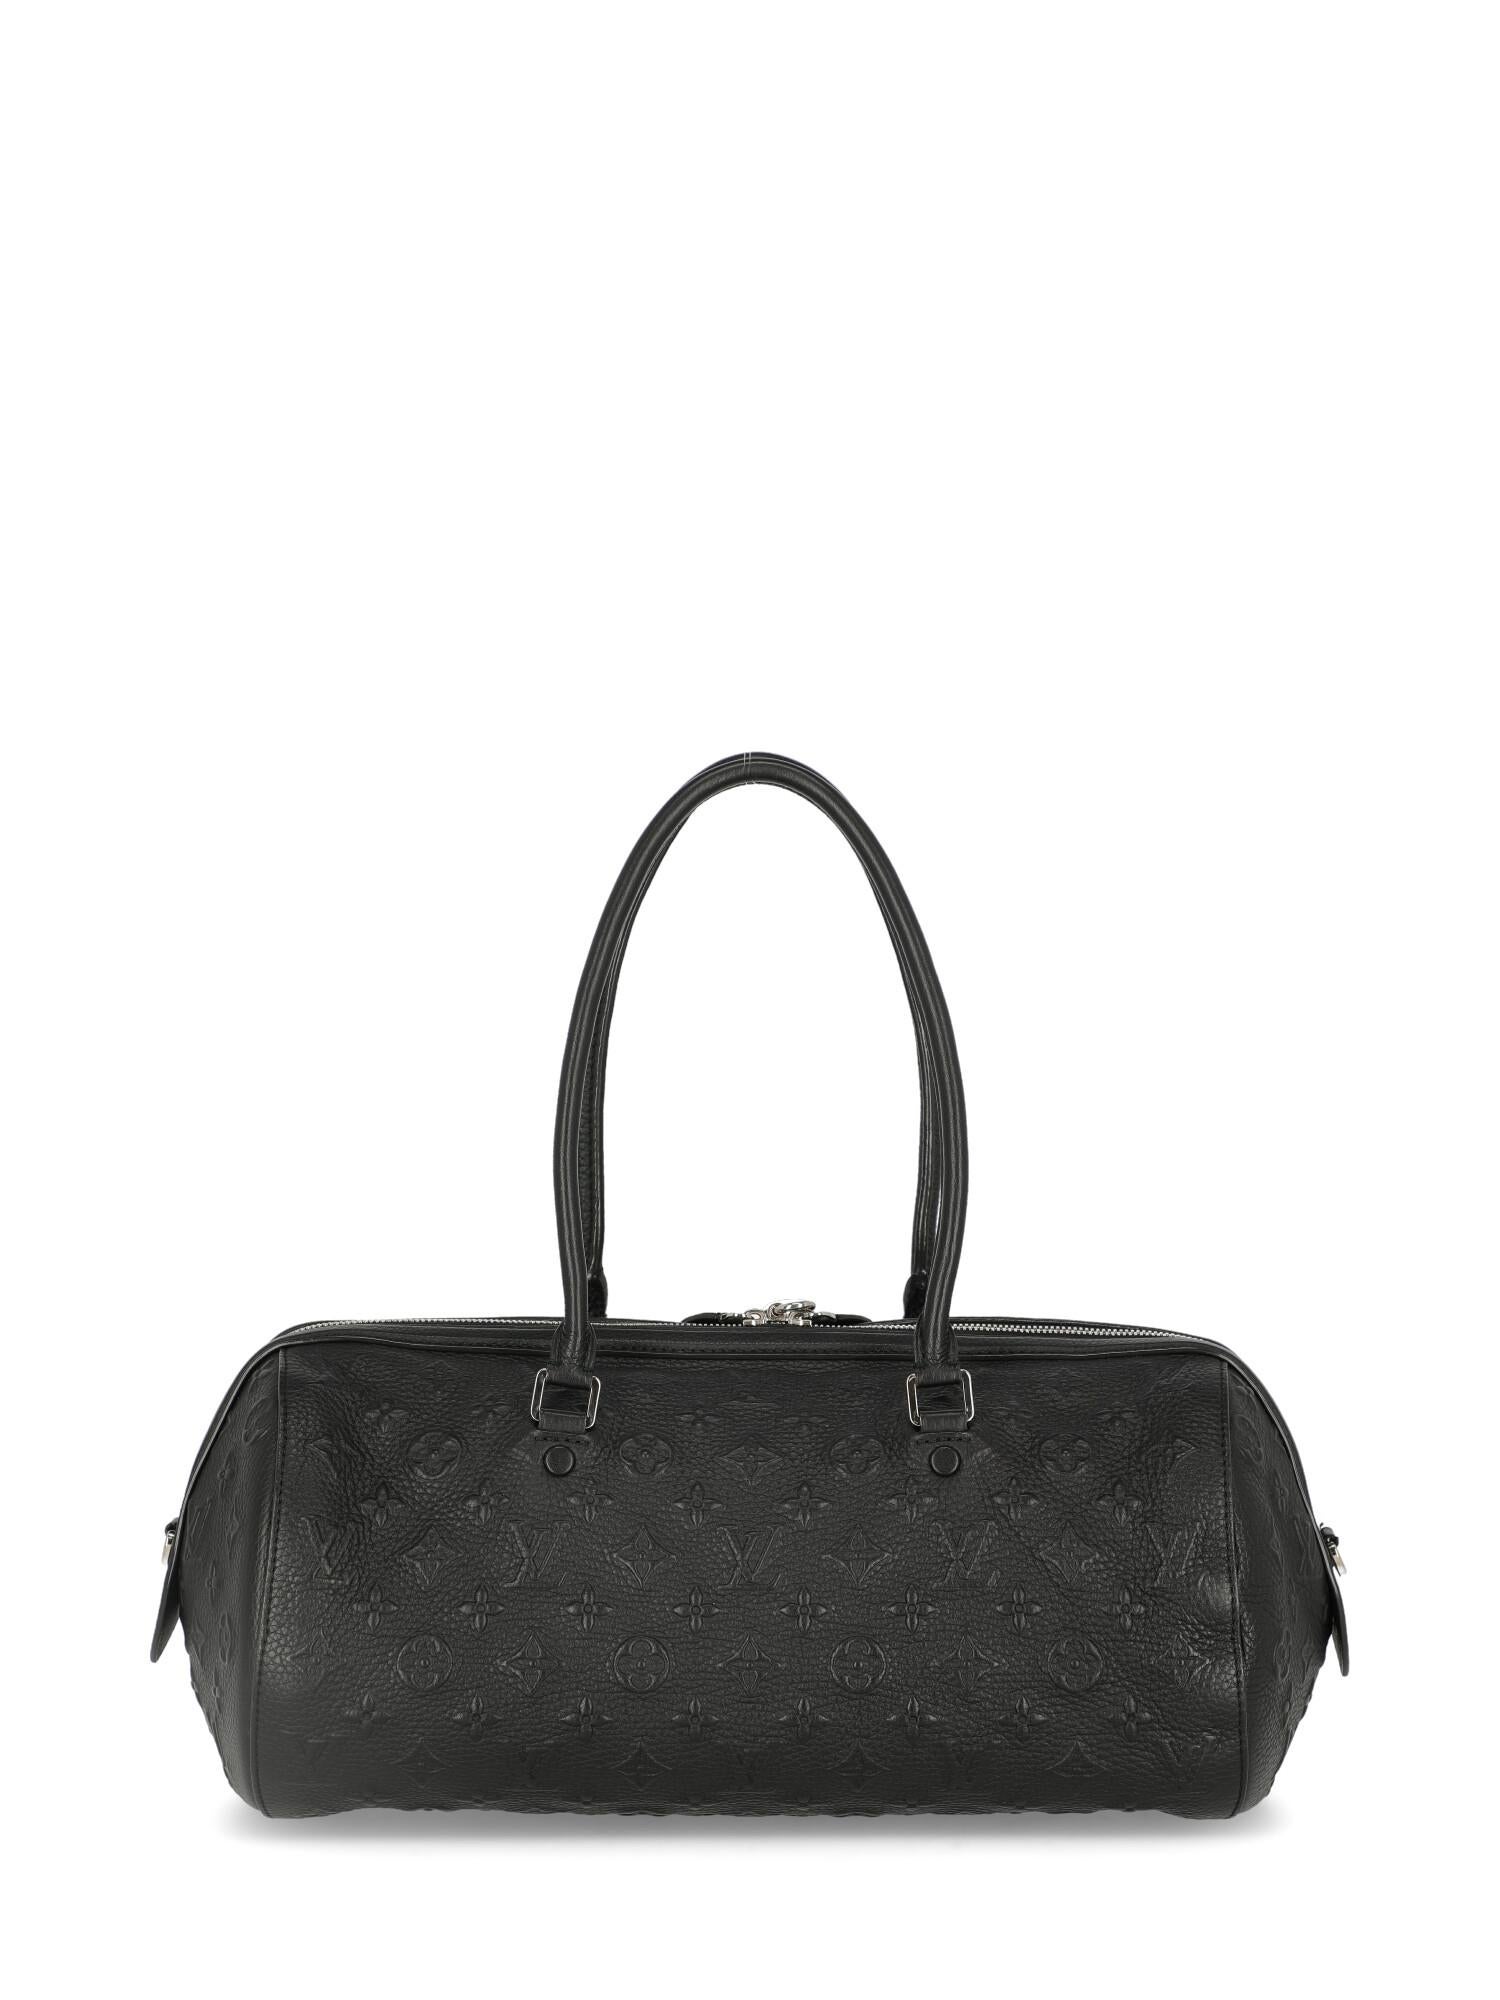 Women's Louis Vuitton Woman Shoulder bag Black Leather